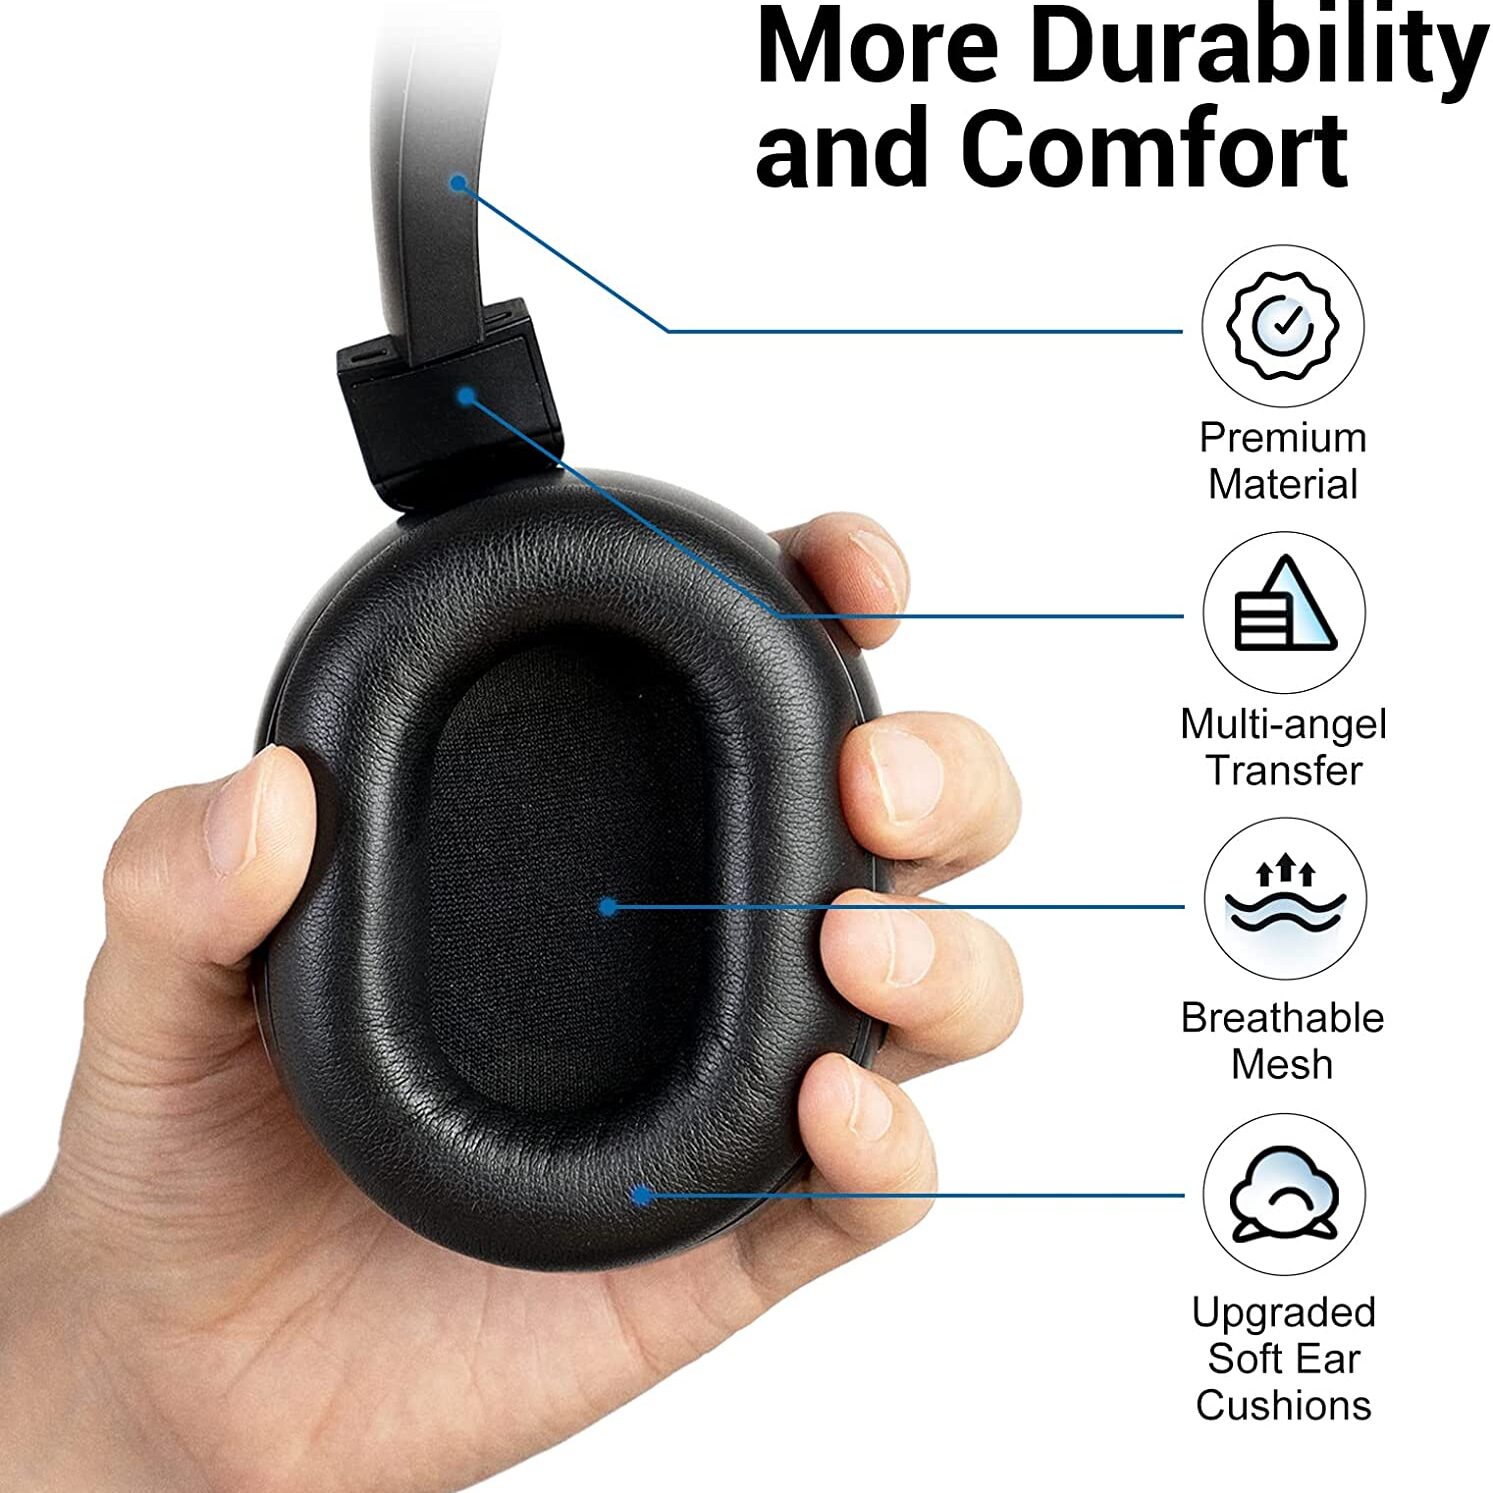 SE9 Active Noise Cancelling Headphones